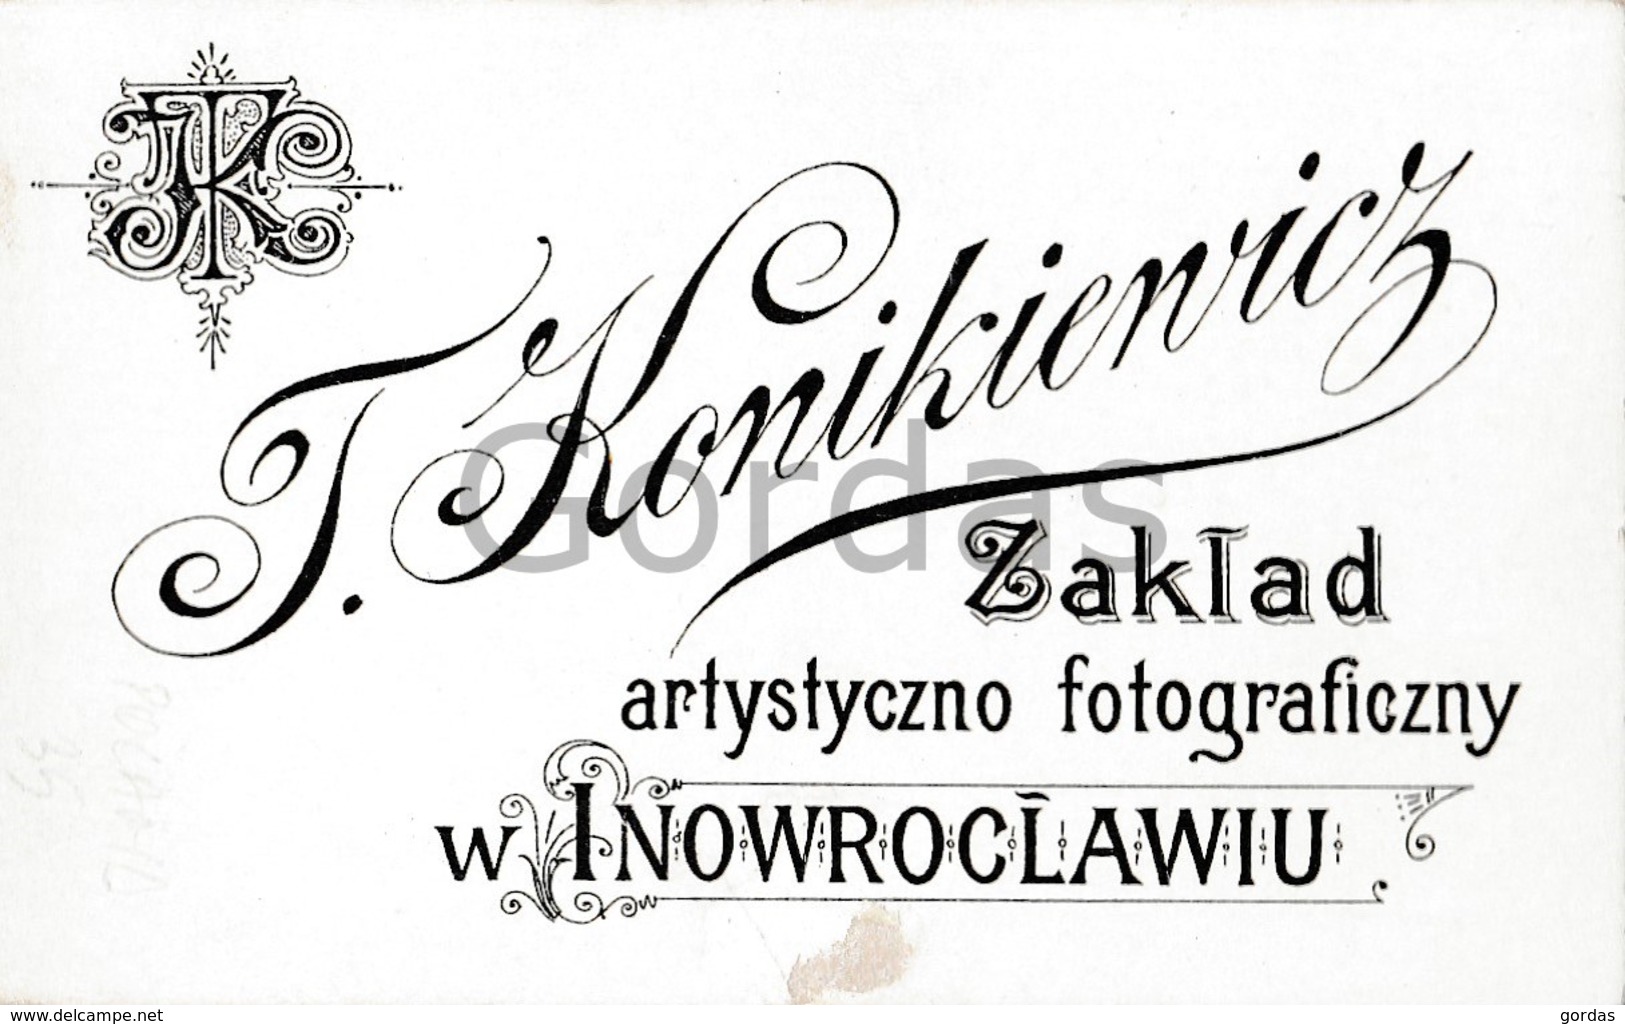 Poland - Inoworclaw - Photo Konikiewicz - 65x115mm - Old (before 1900)